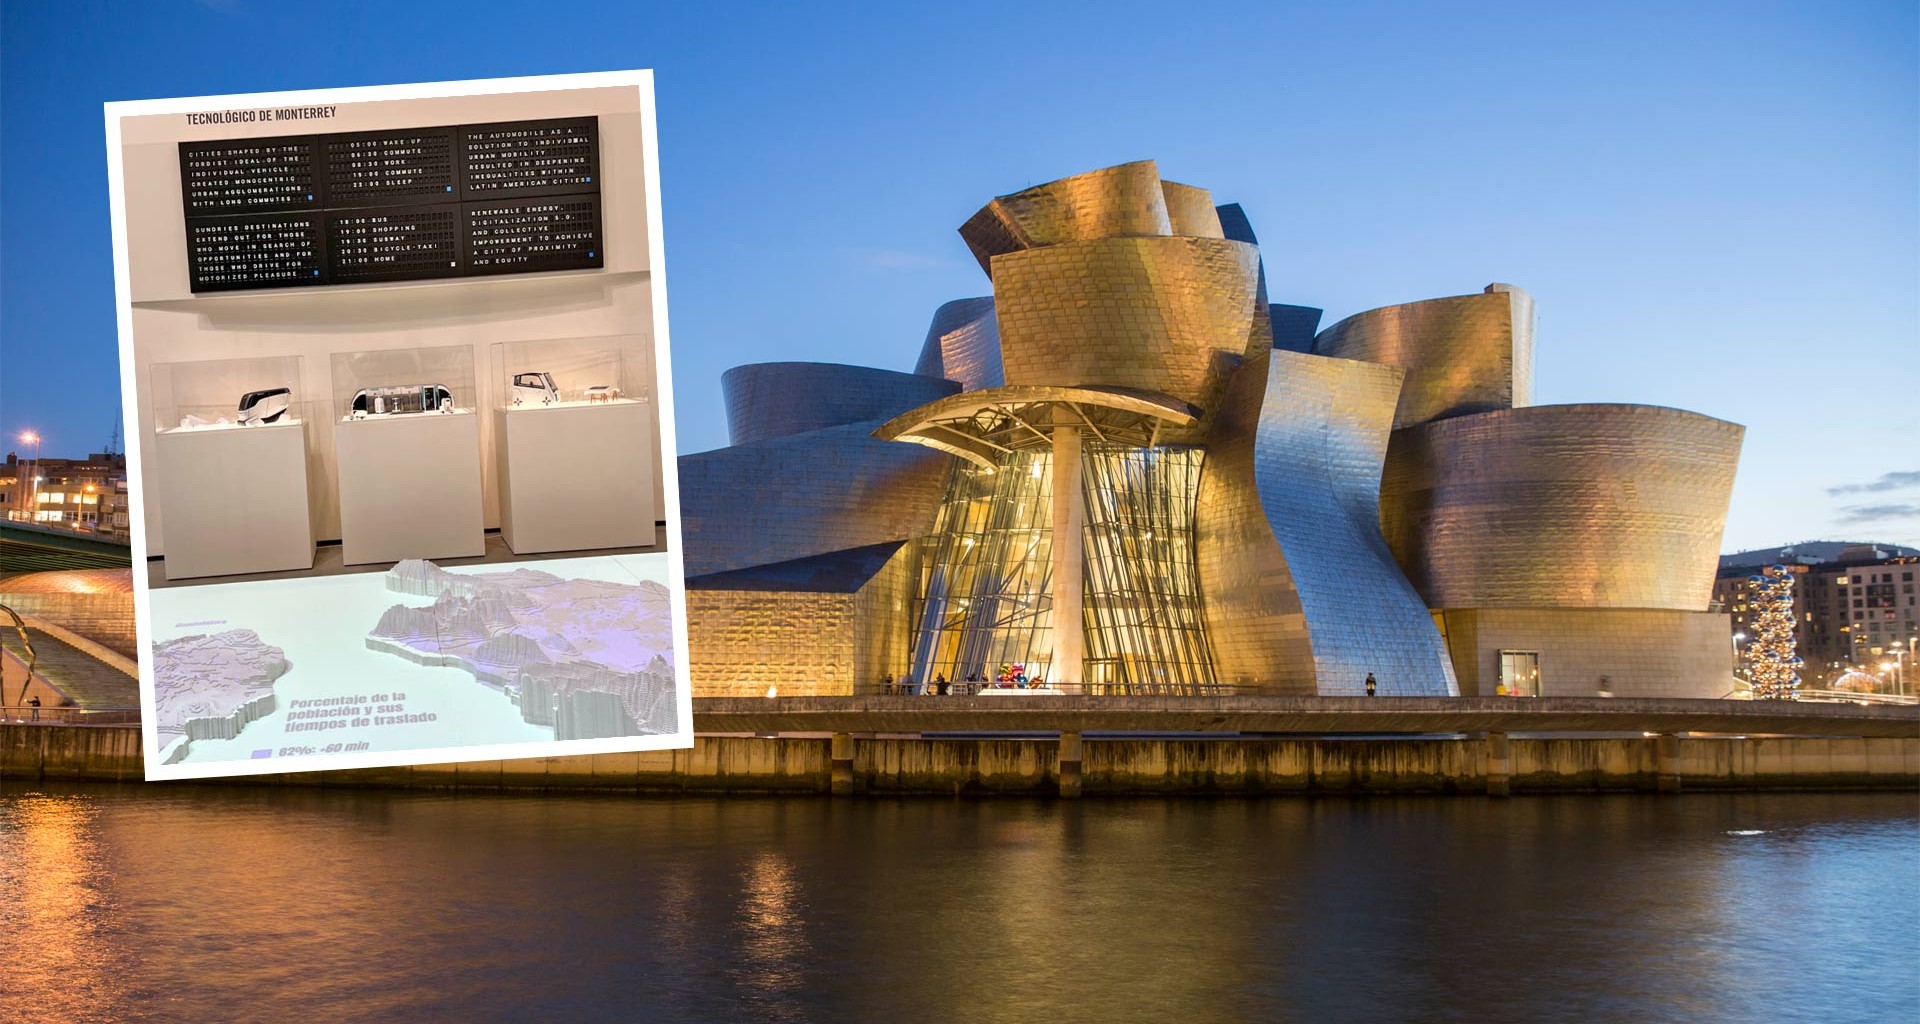 La Escuela de Arquitectura, Arte y Diseño del Tec expone una pieza de estudiantes y profesores en el Museo Guggenheim de Bilbao.